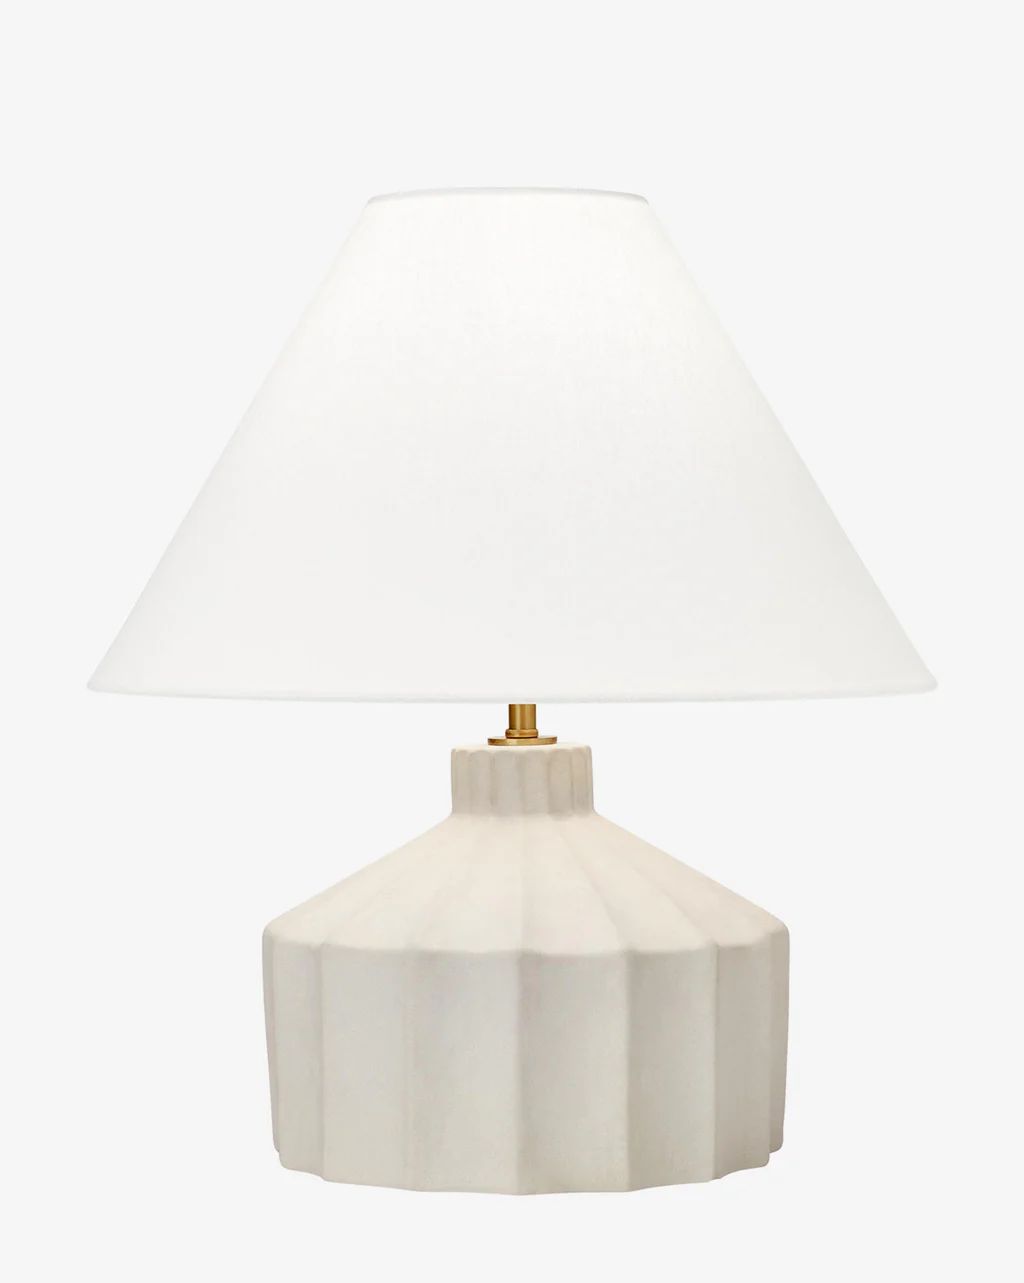 Veneto Table Lamp | McGee & Co.